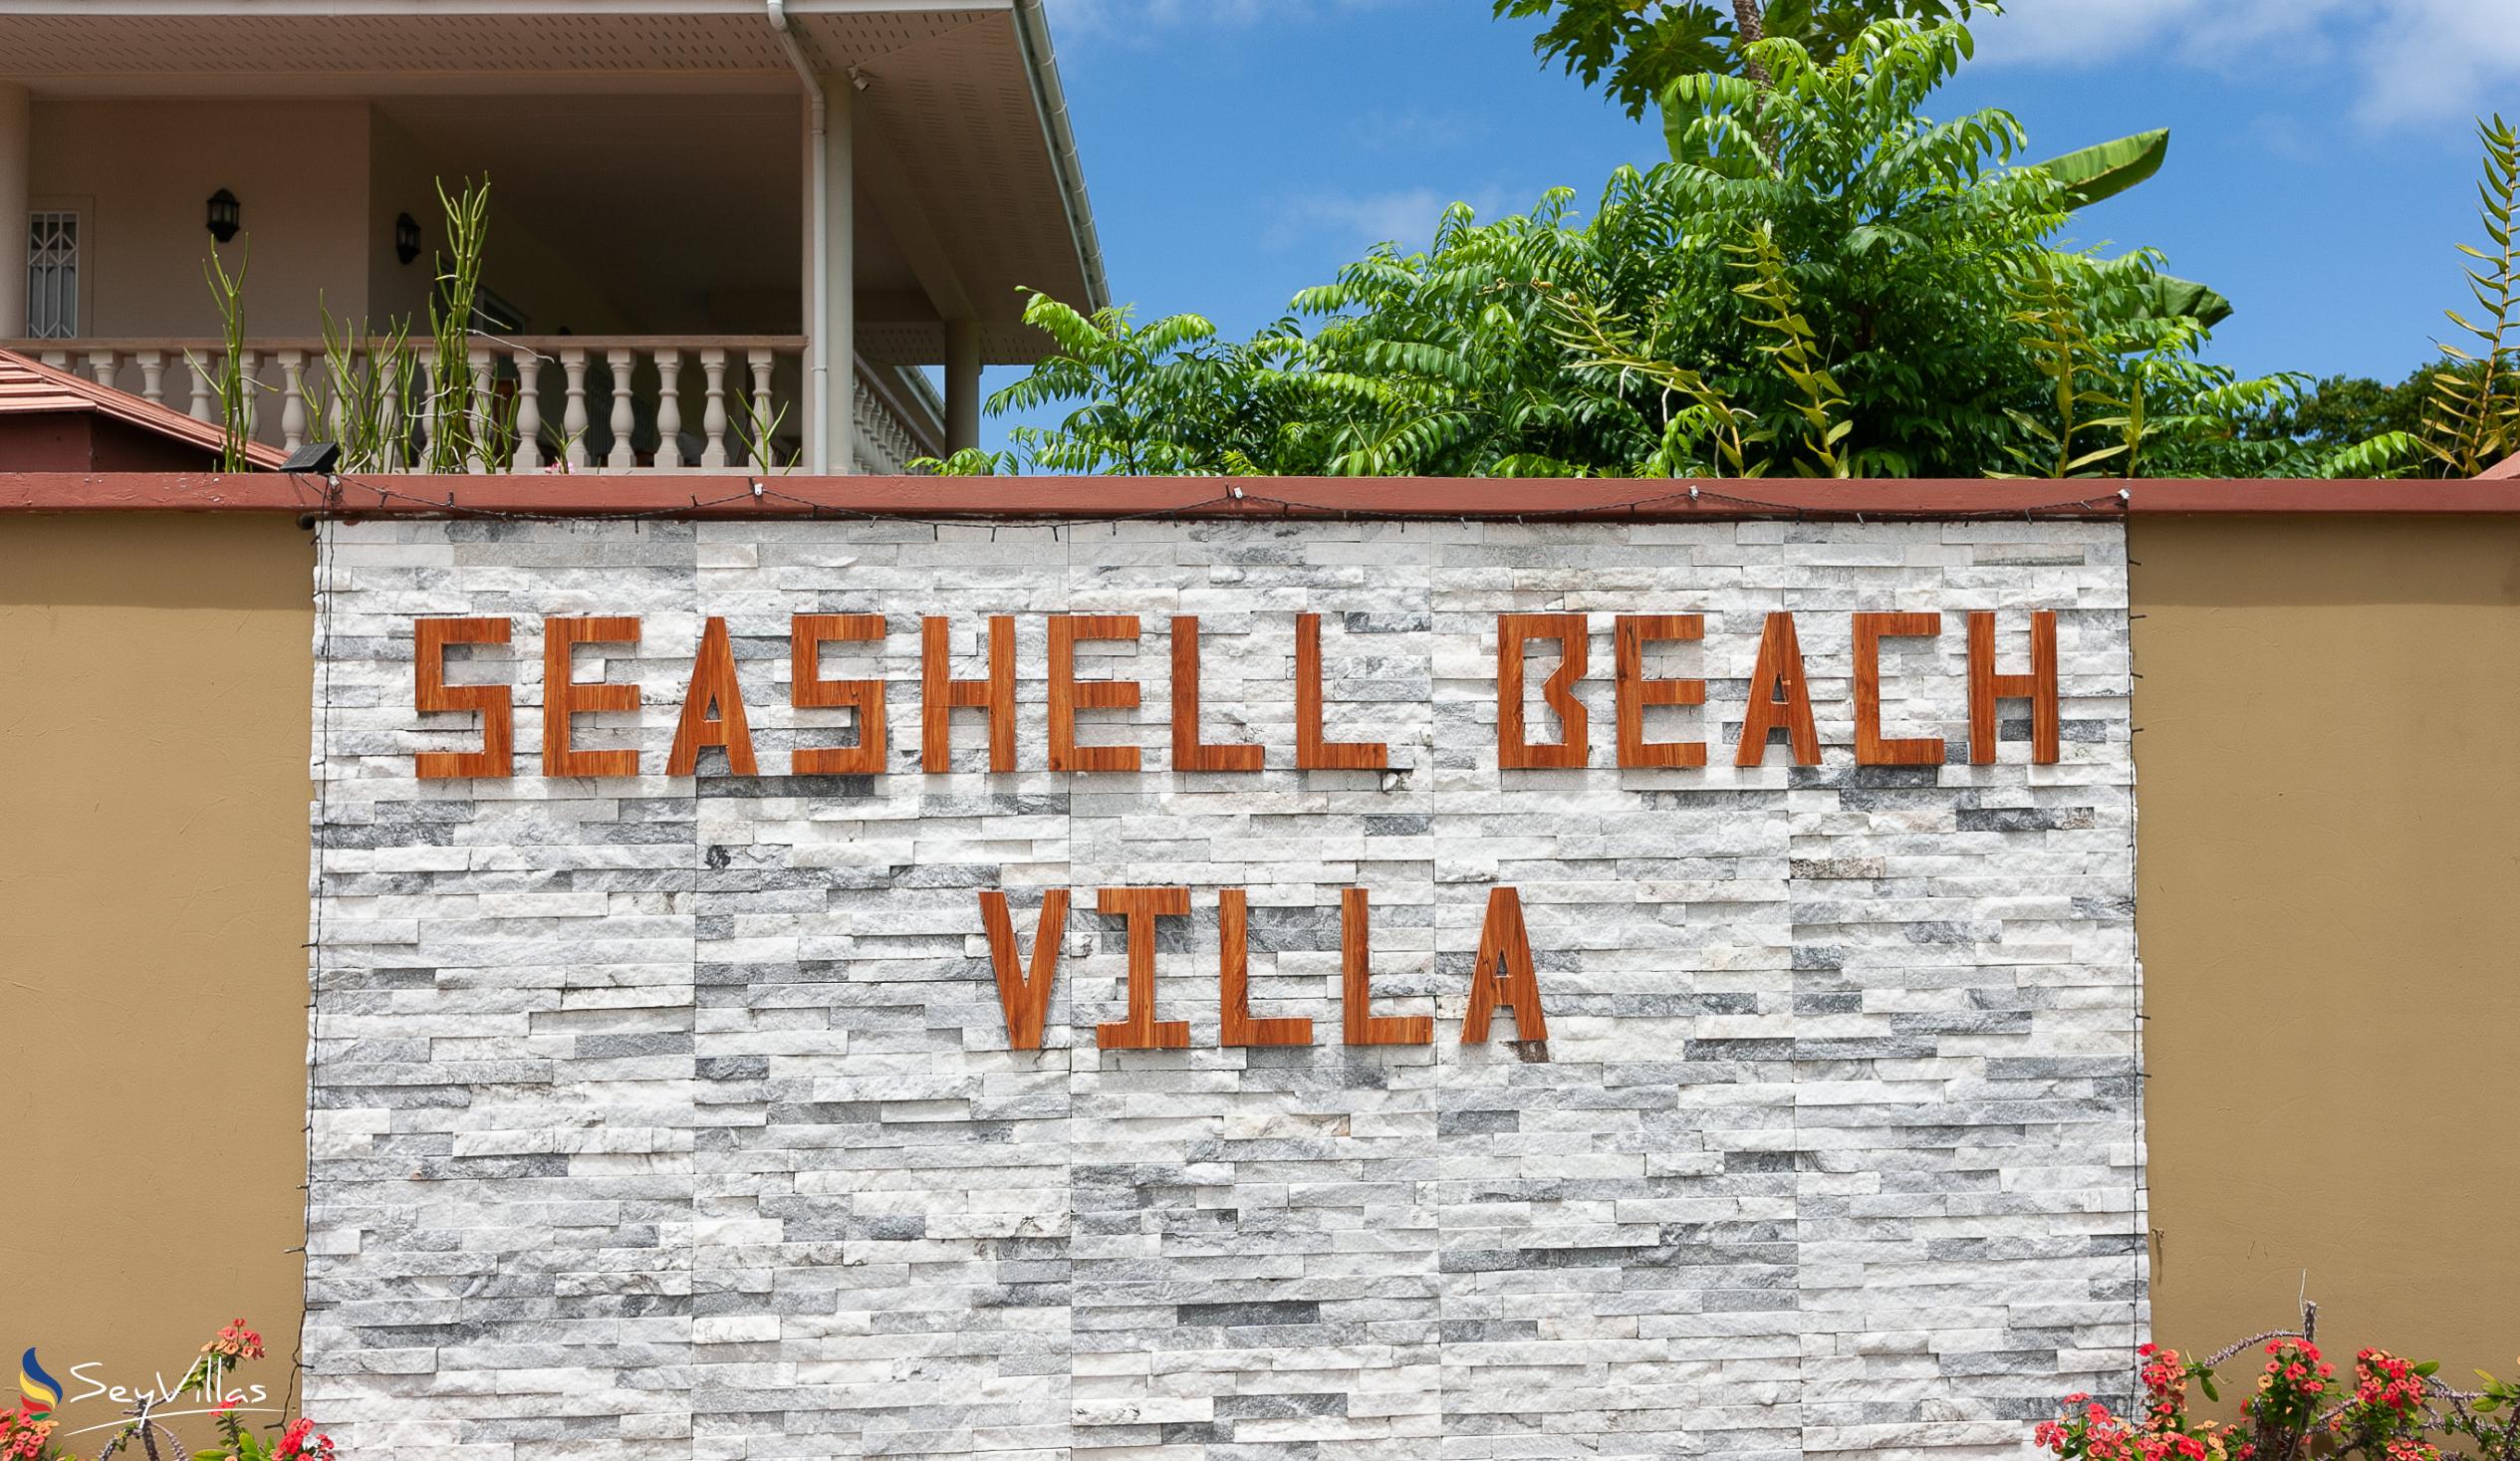 Foto 14: Seashell Beach Villa - Aussenbereich - Praslin (Seychellen)